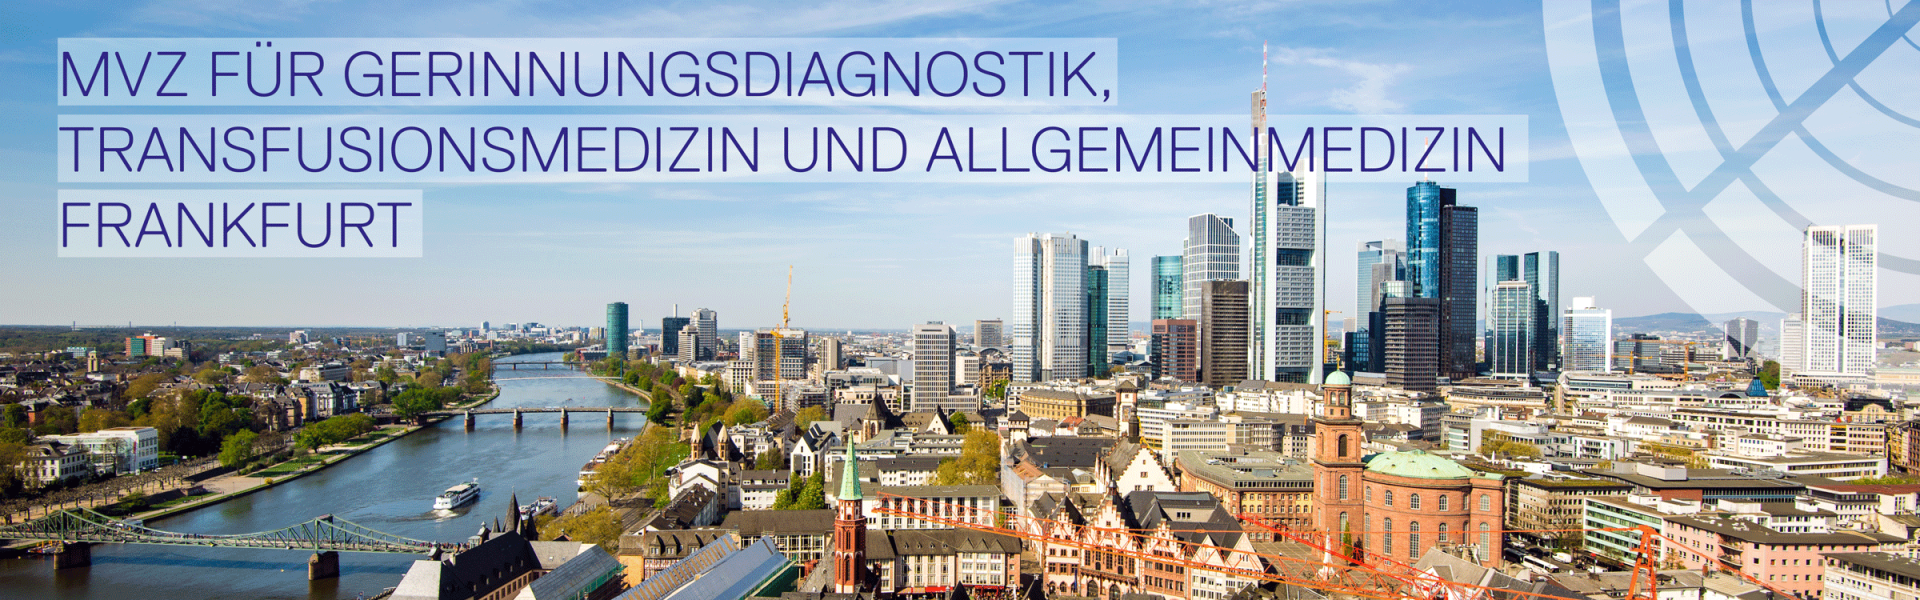 ZOTZ|KLIMAS, MVZ, Gerinnungsdiagnostik und Humangenetik, Standort, Frankfurt, Arztpraxis, Skyline, Stadt